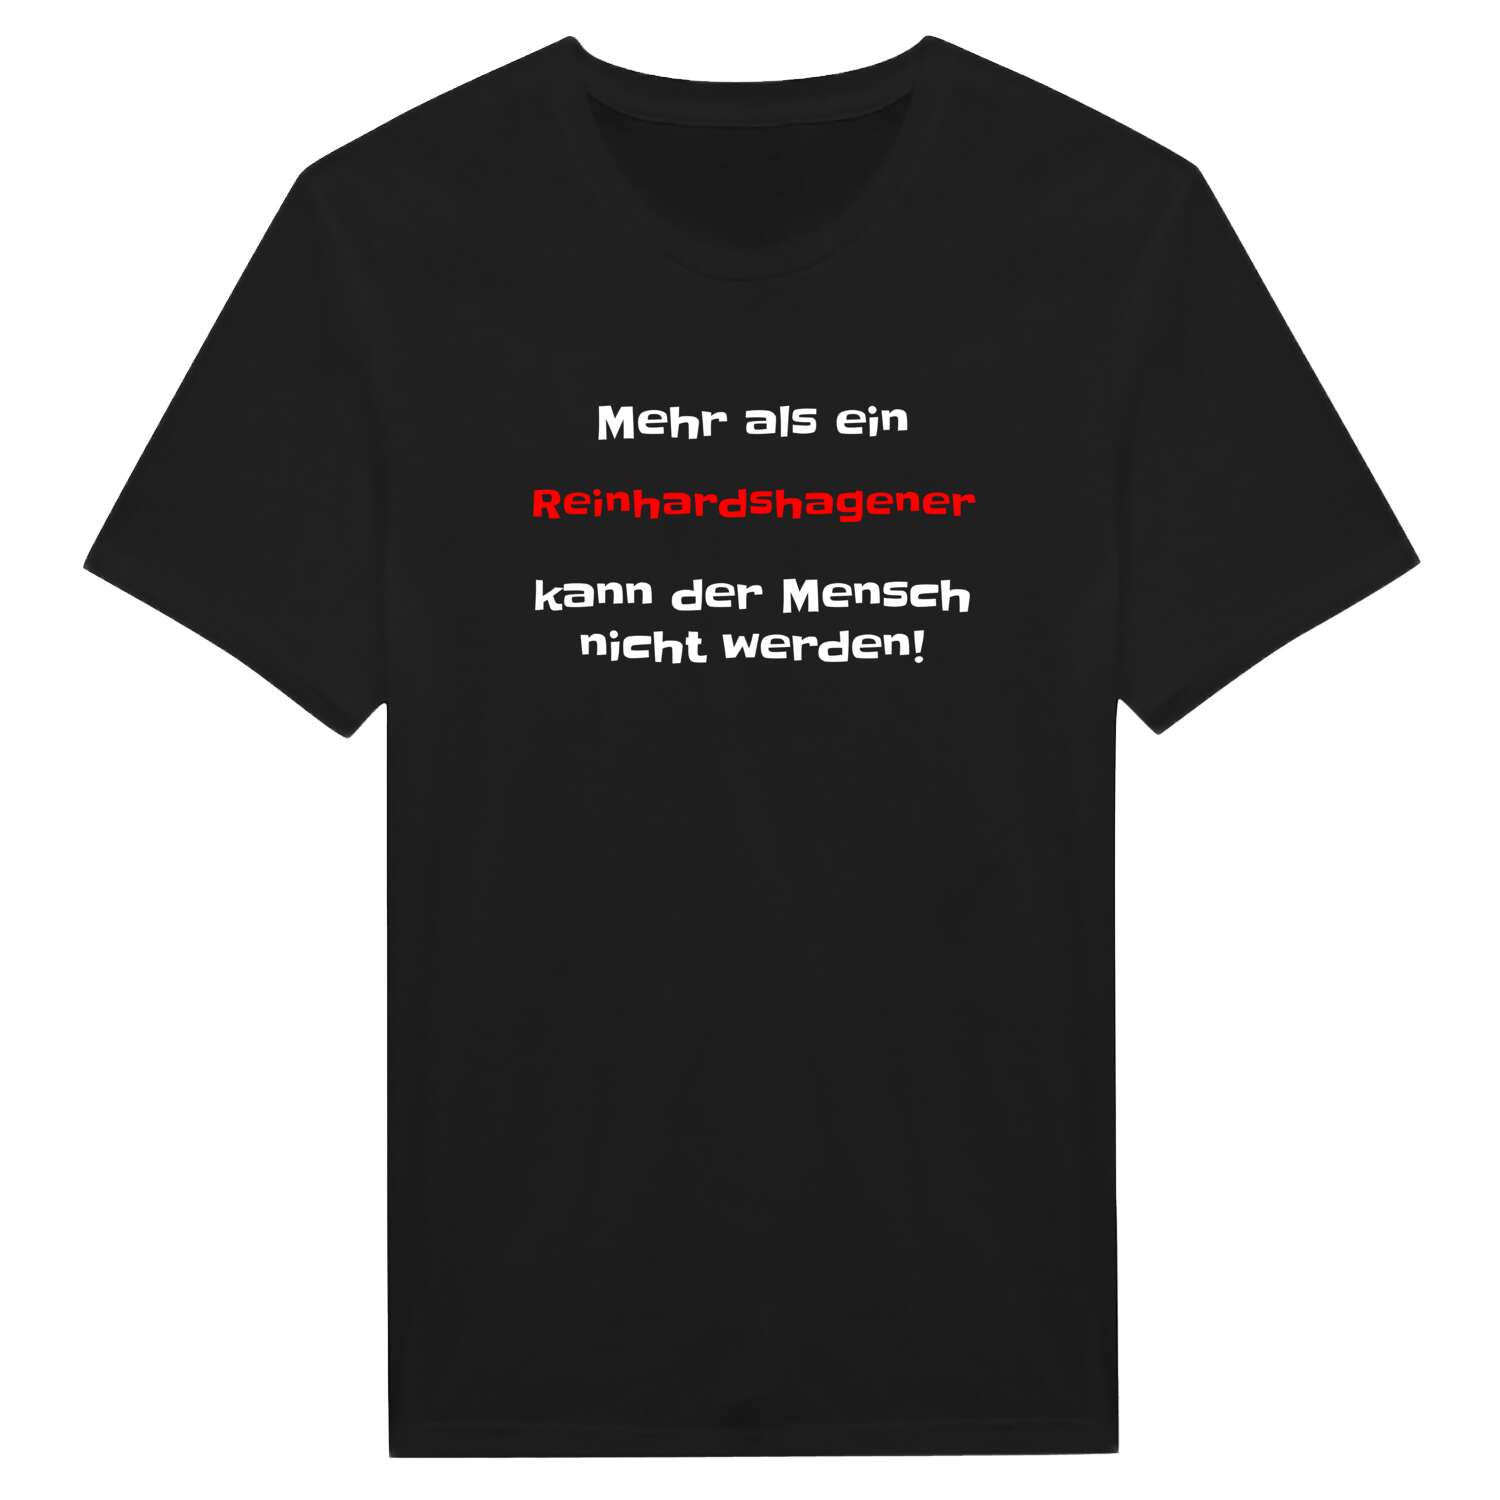 Reinhardshagen T-Shirt »Mehr als ein«